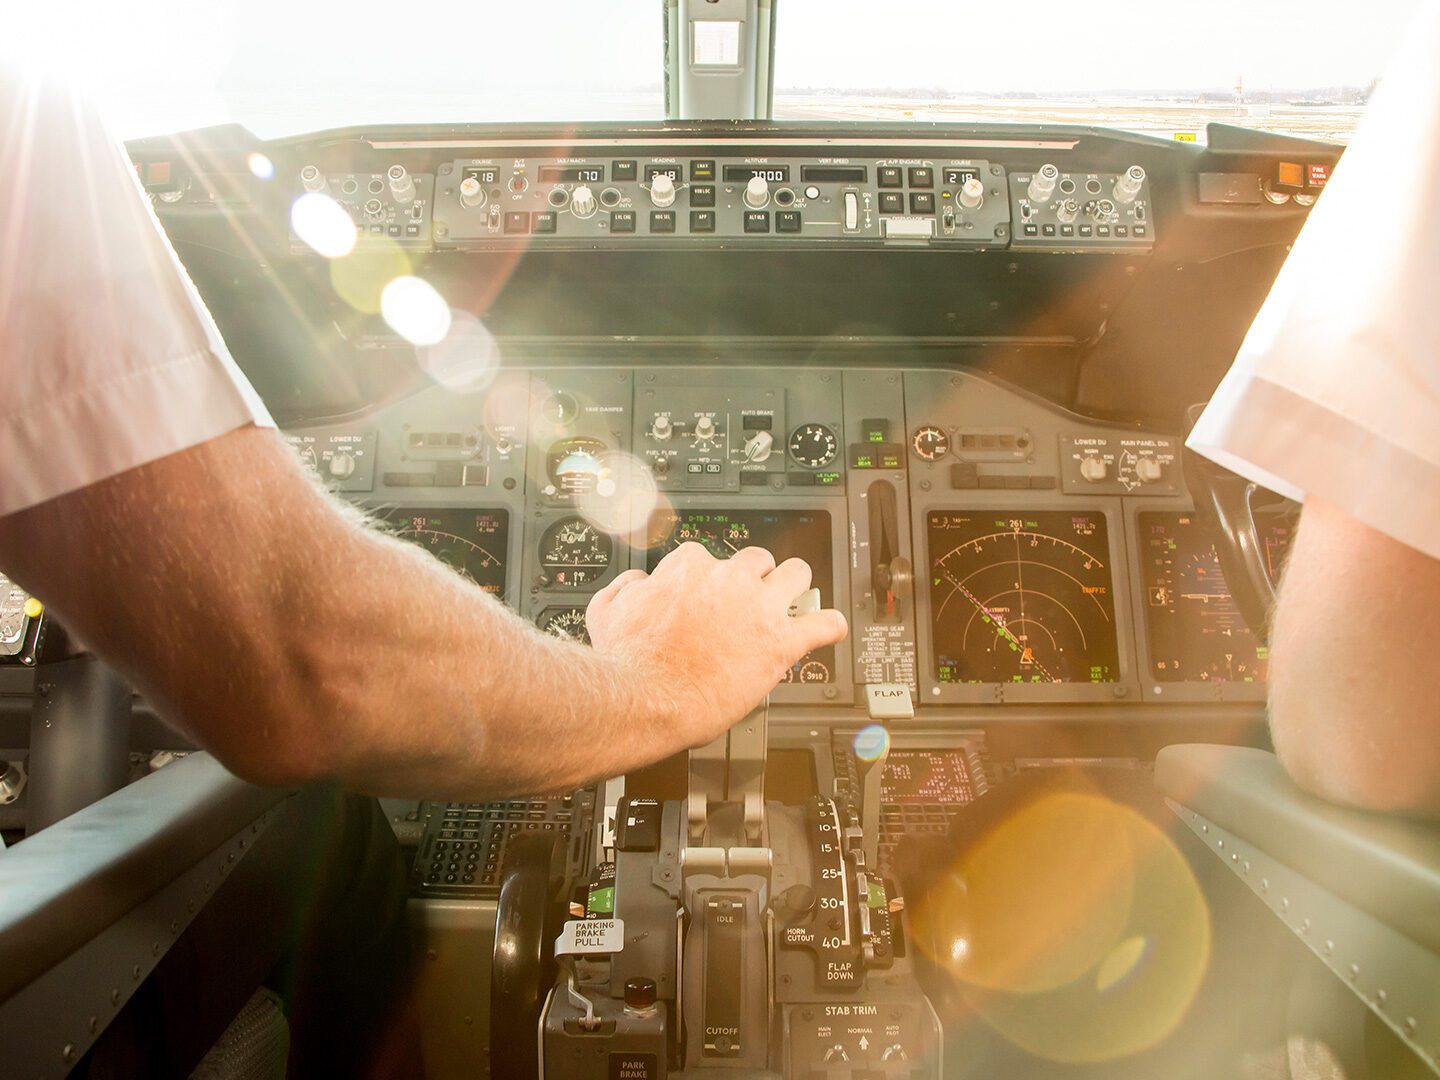 Foto aus dem Cockpit eines Flugzeugs, vom Piloten ist nur de rechte Hand zu sehen. Zum Start der Maschine wird der Starthebel nach vorn gedrückt, von von scheint Sonne ins Cockpit.